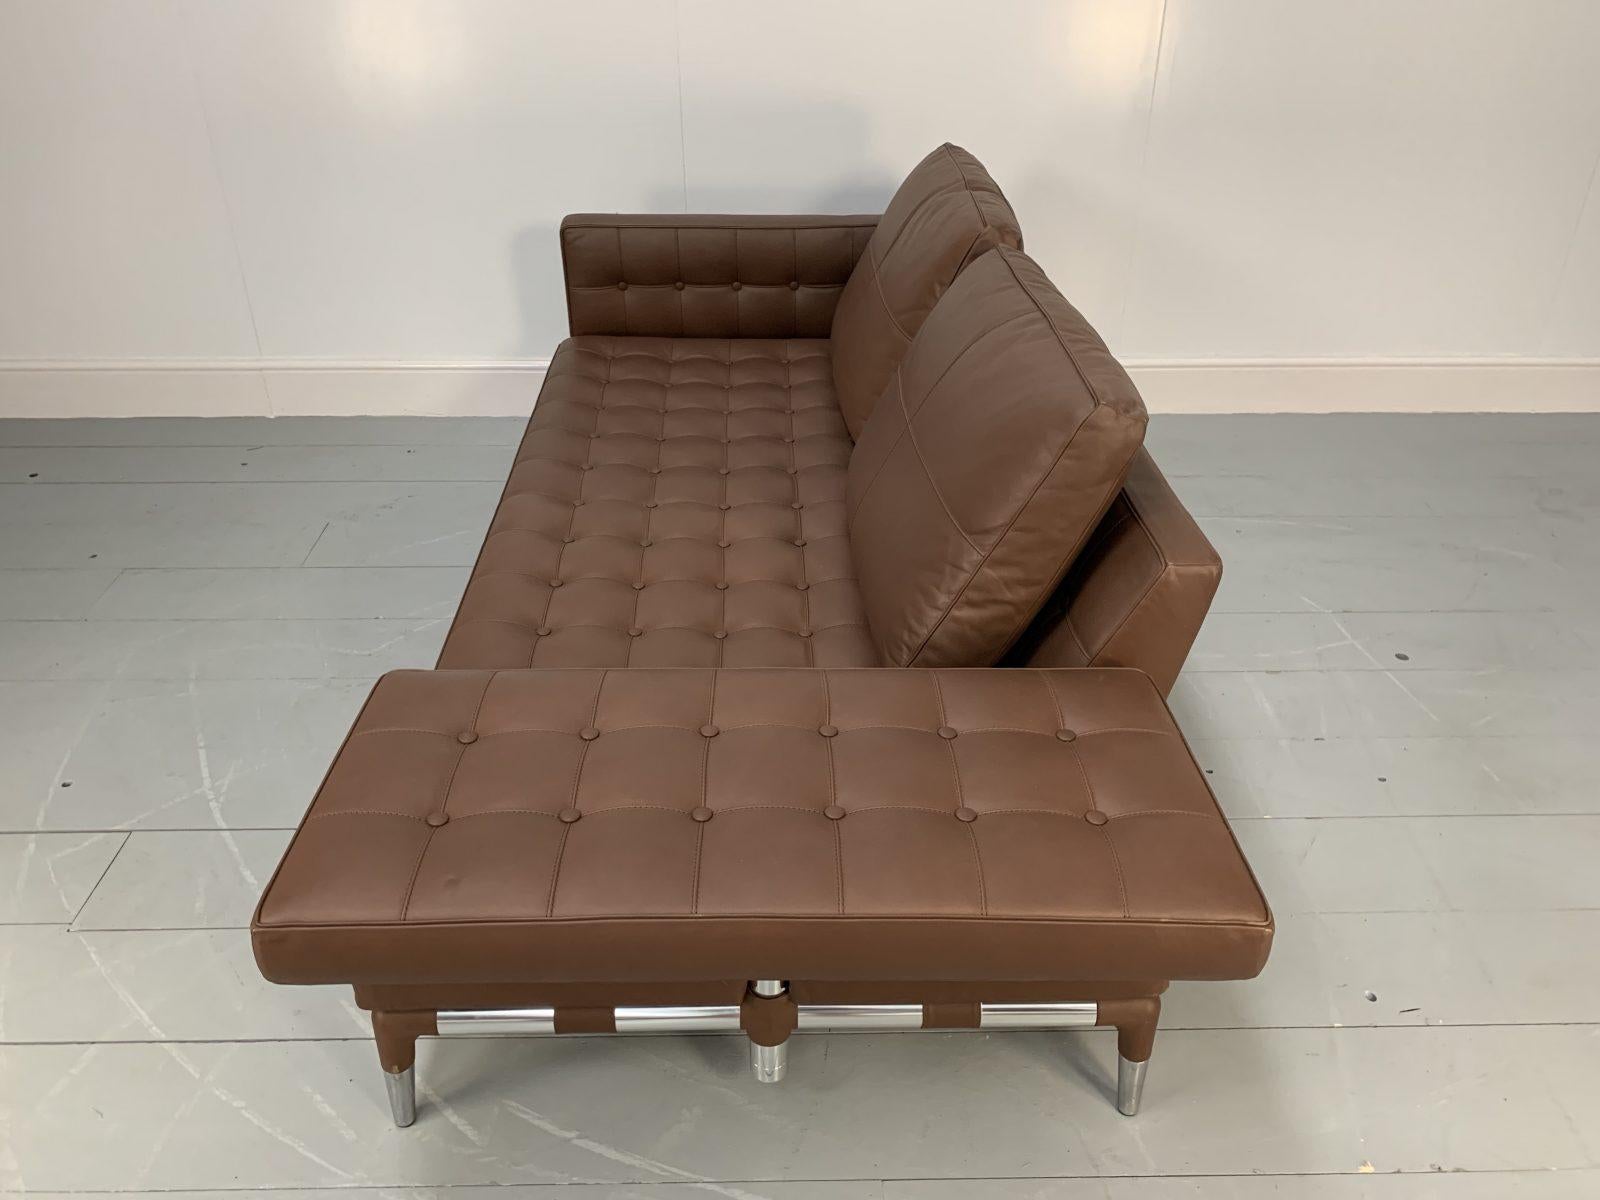 Cassina “241 Prive Divano” Sofa – in Mid-Brown “Pelle” Leather 4